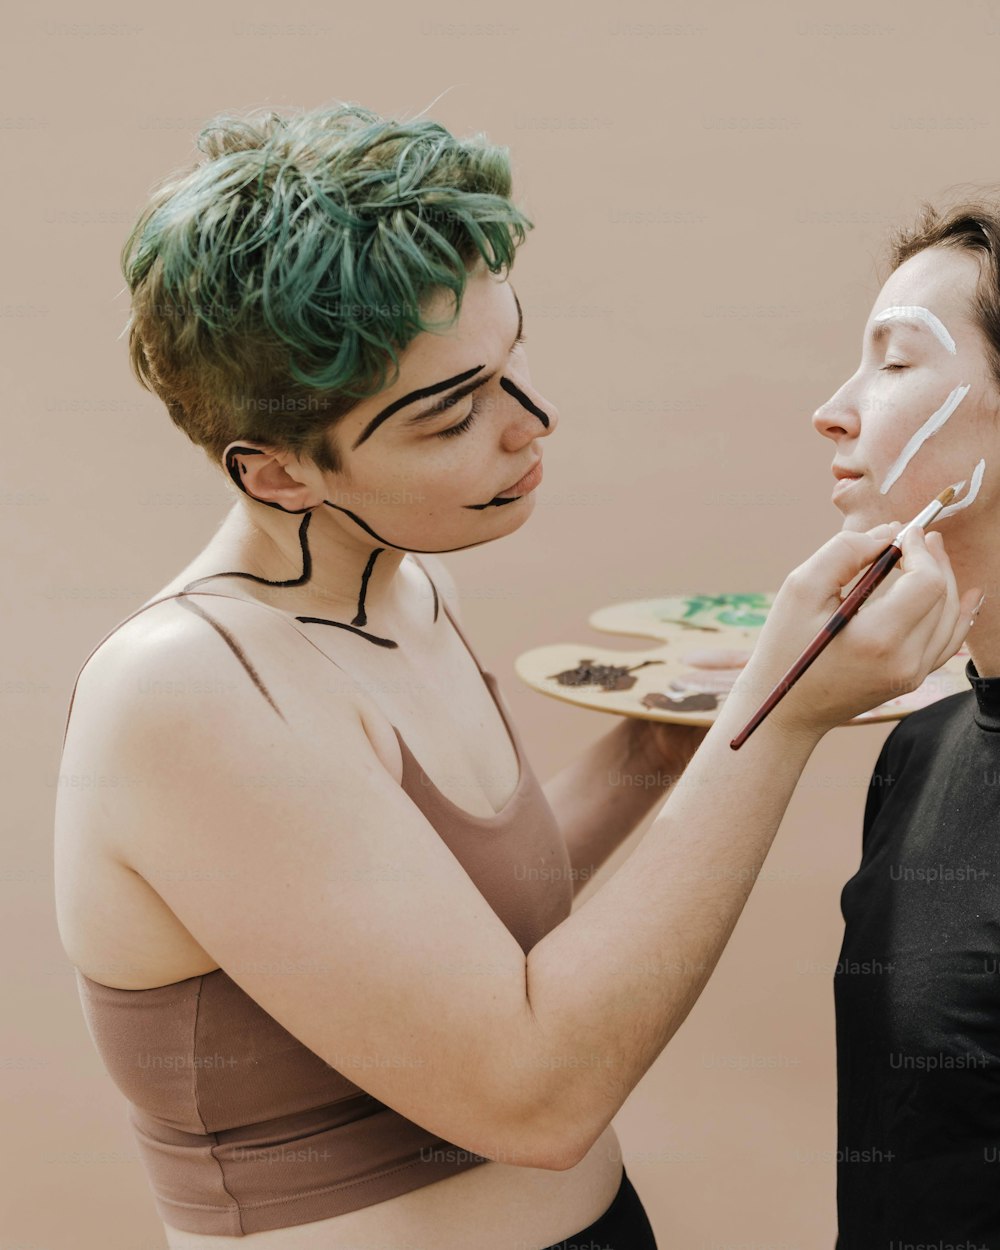 Une femme aux cheveux verts peint le visage d’une autre femme